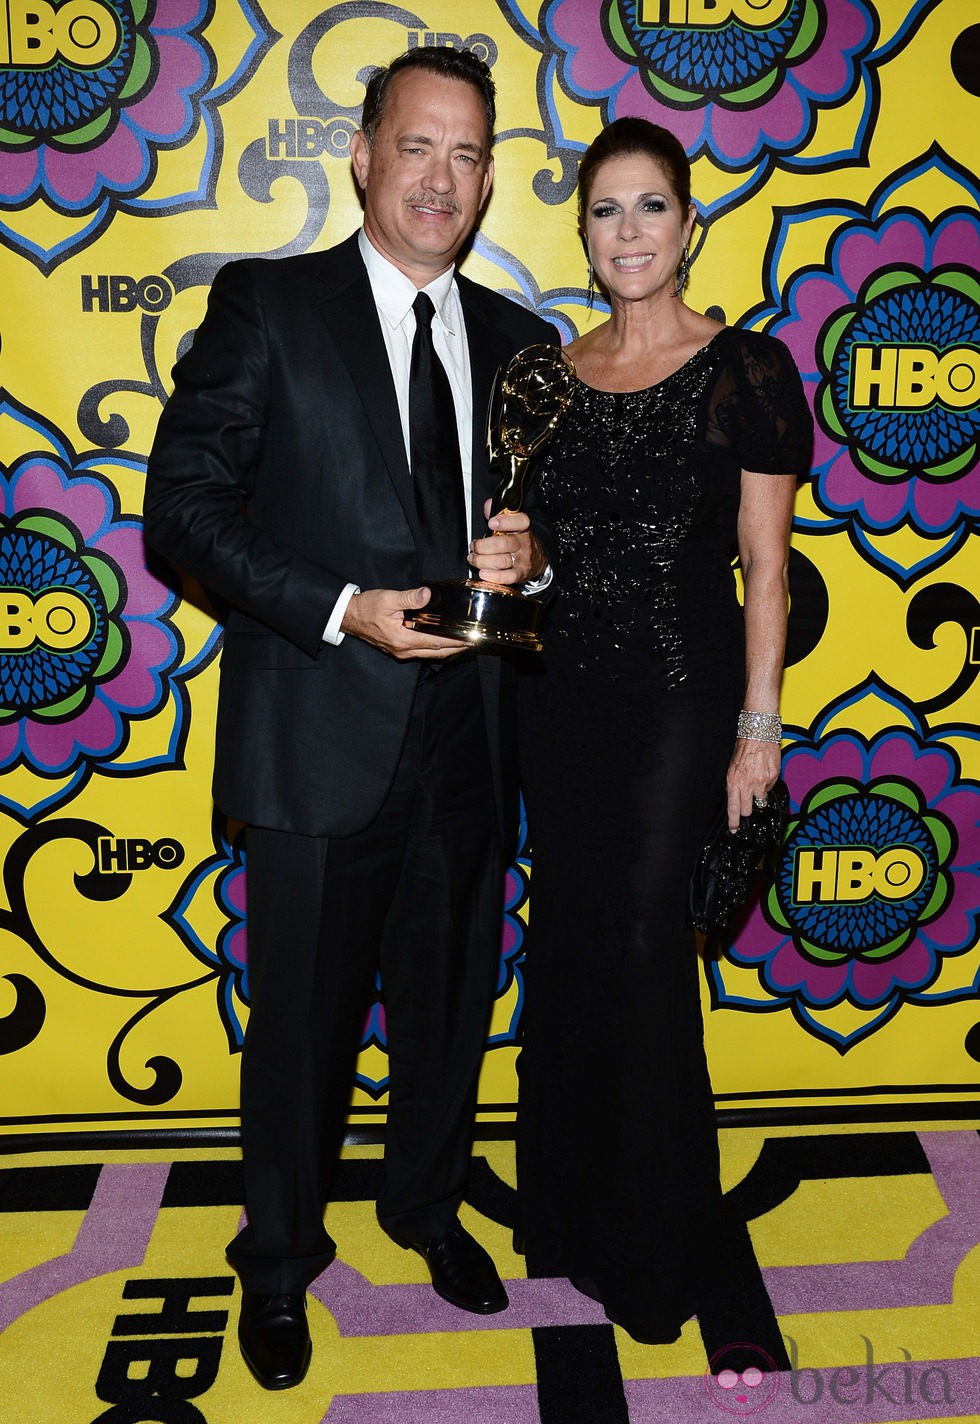 Tom Hanks y su mujer Rita Wilson en la fiesta de la HBO tras los Emmy 2012